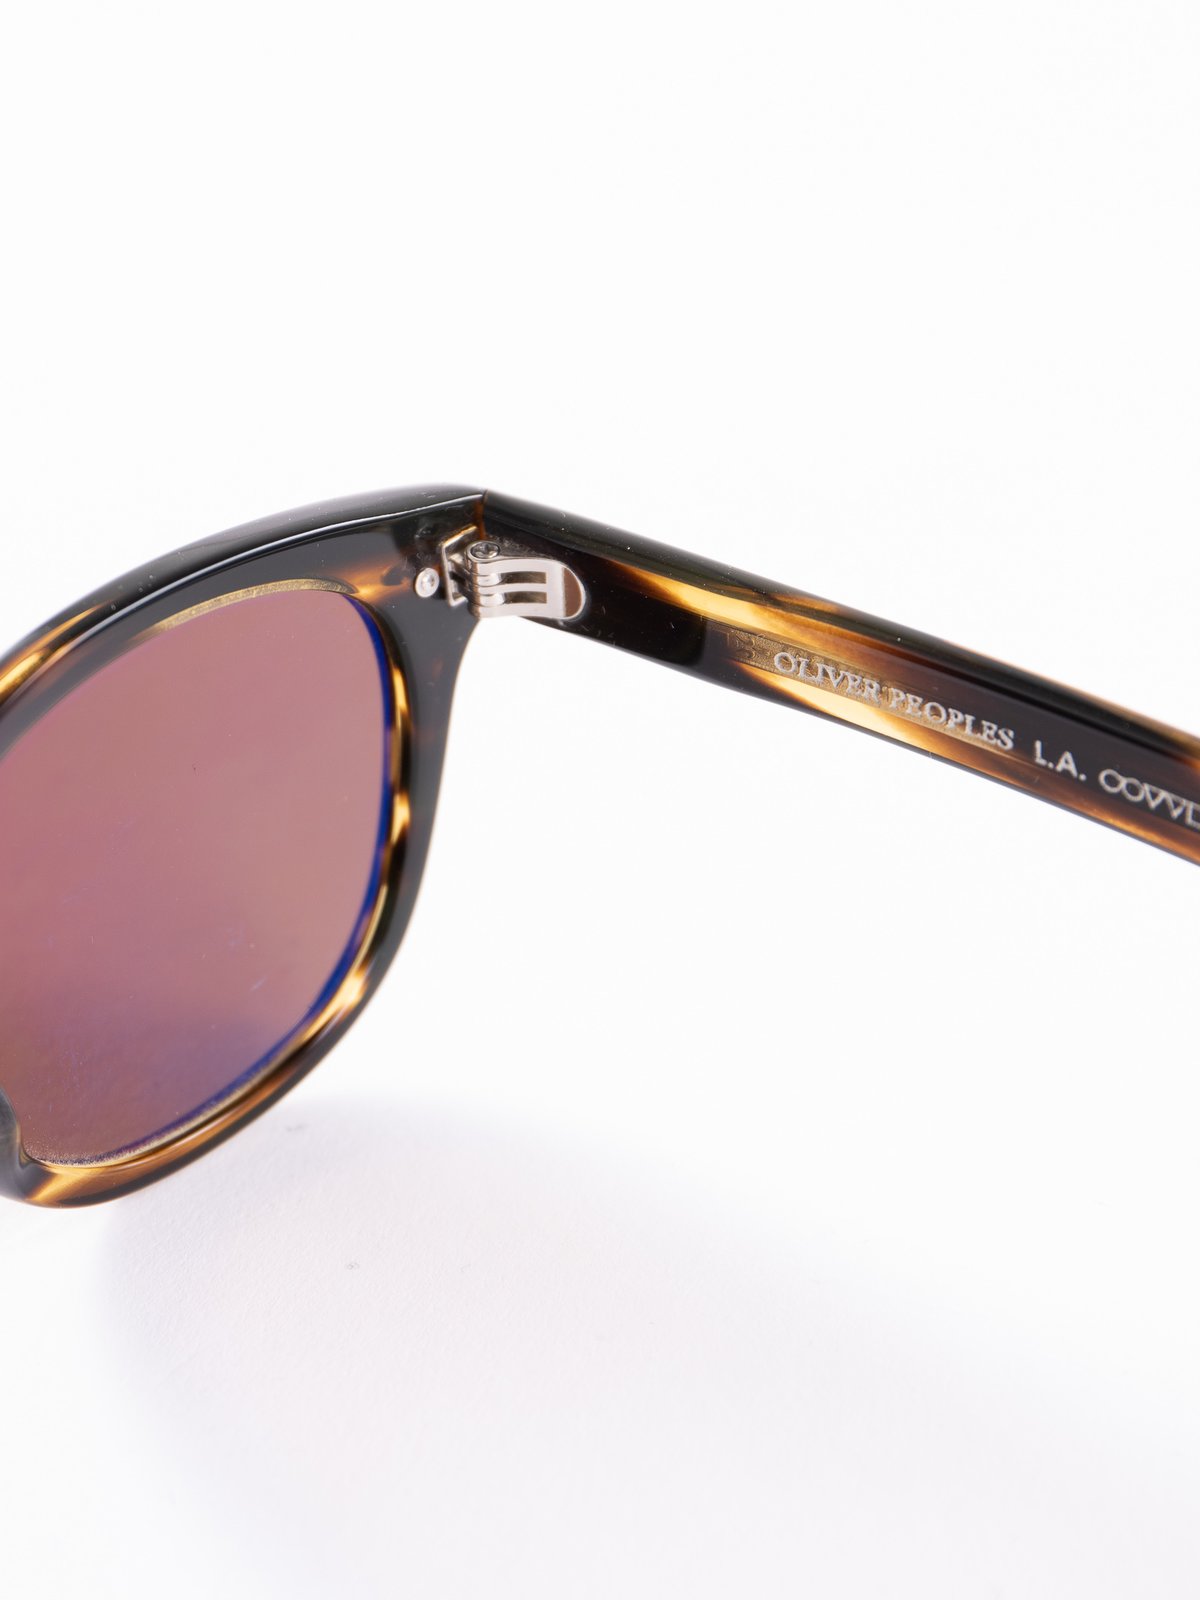 Cocobolo/Brown Sheldrake Sunglasses - Image 4